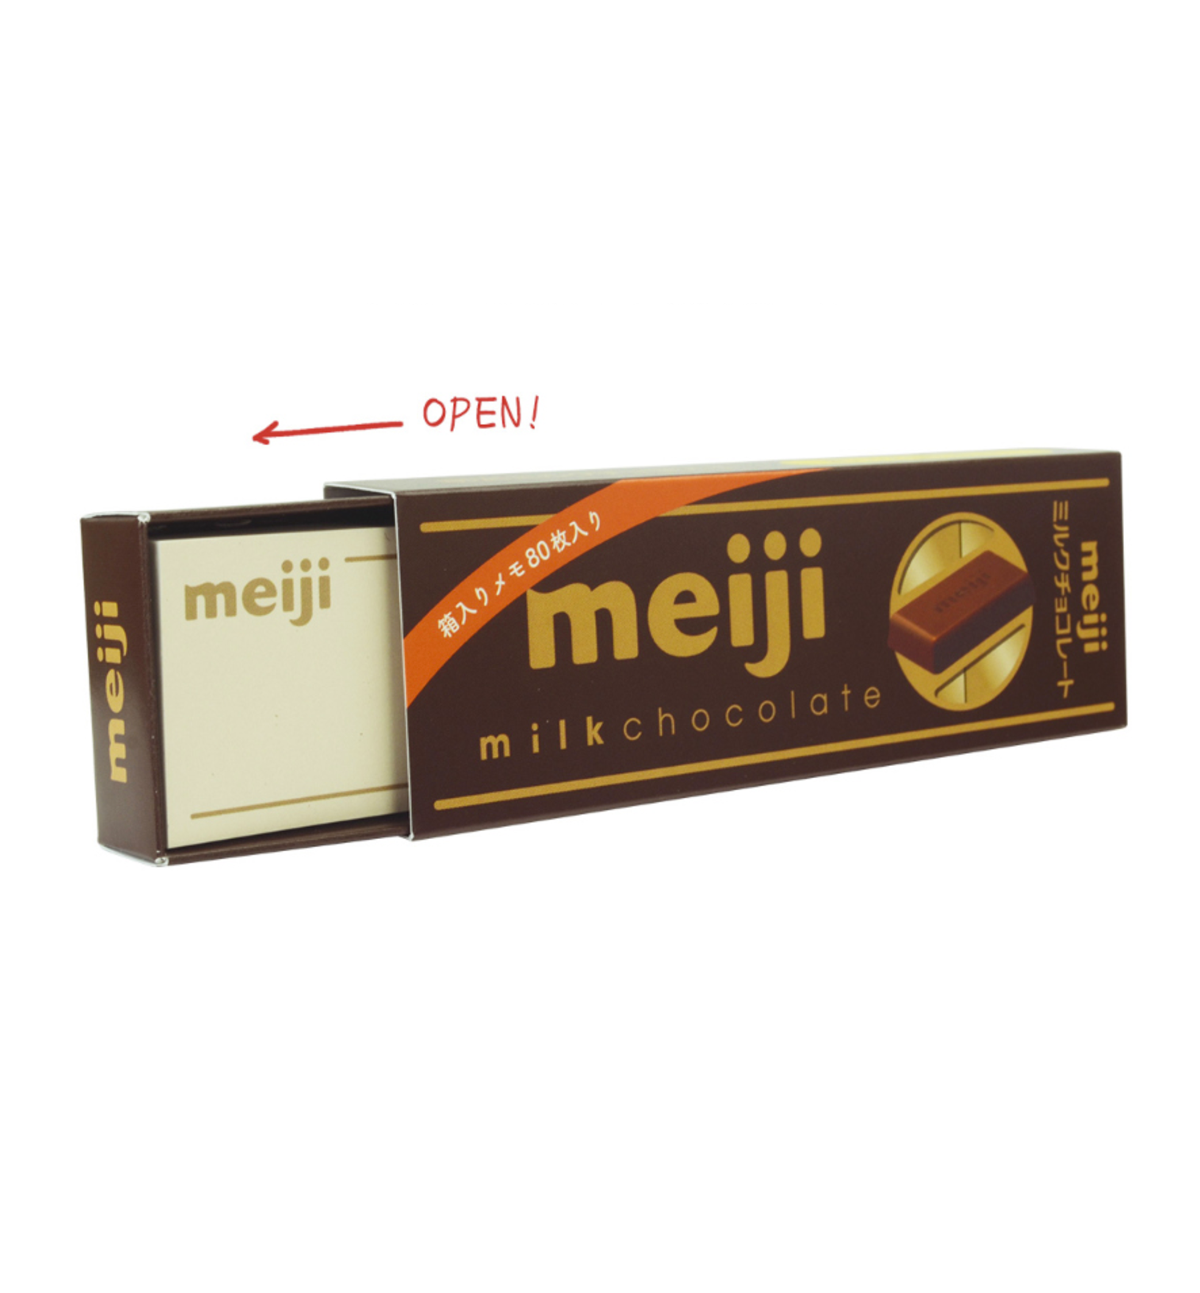 Sweets Series Box Memopad: White Chocolate